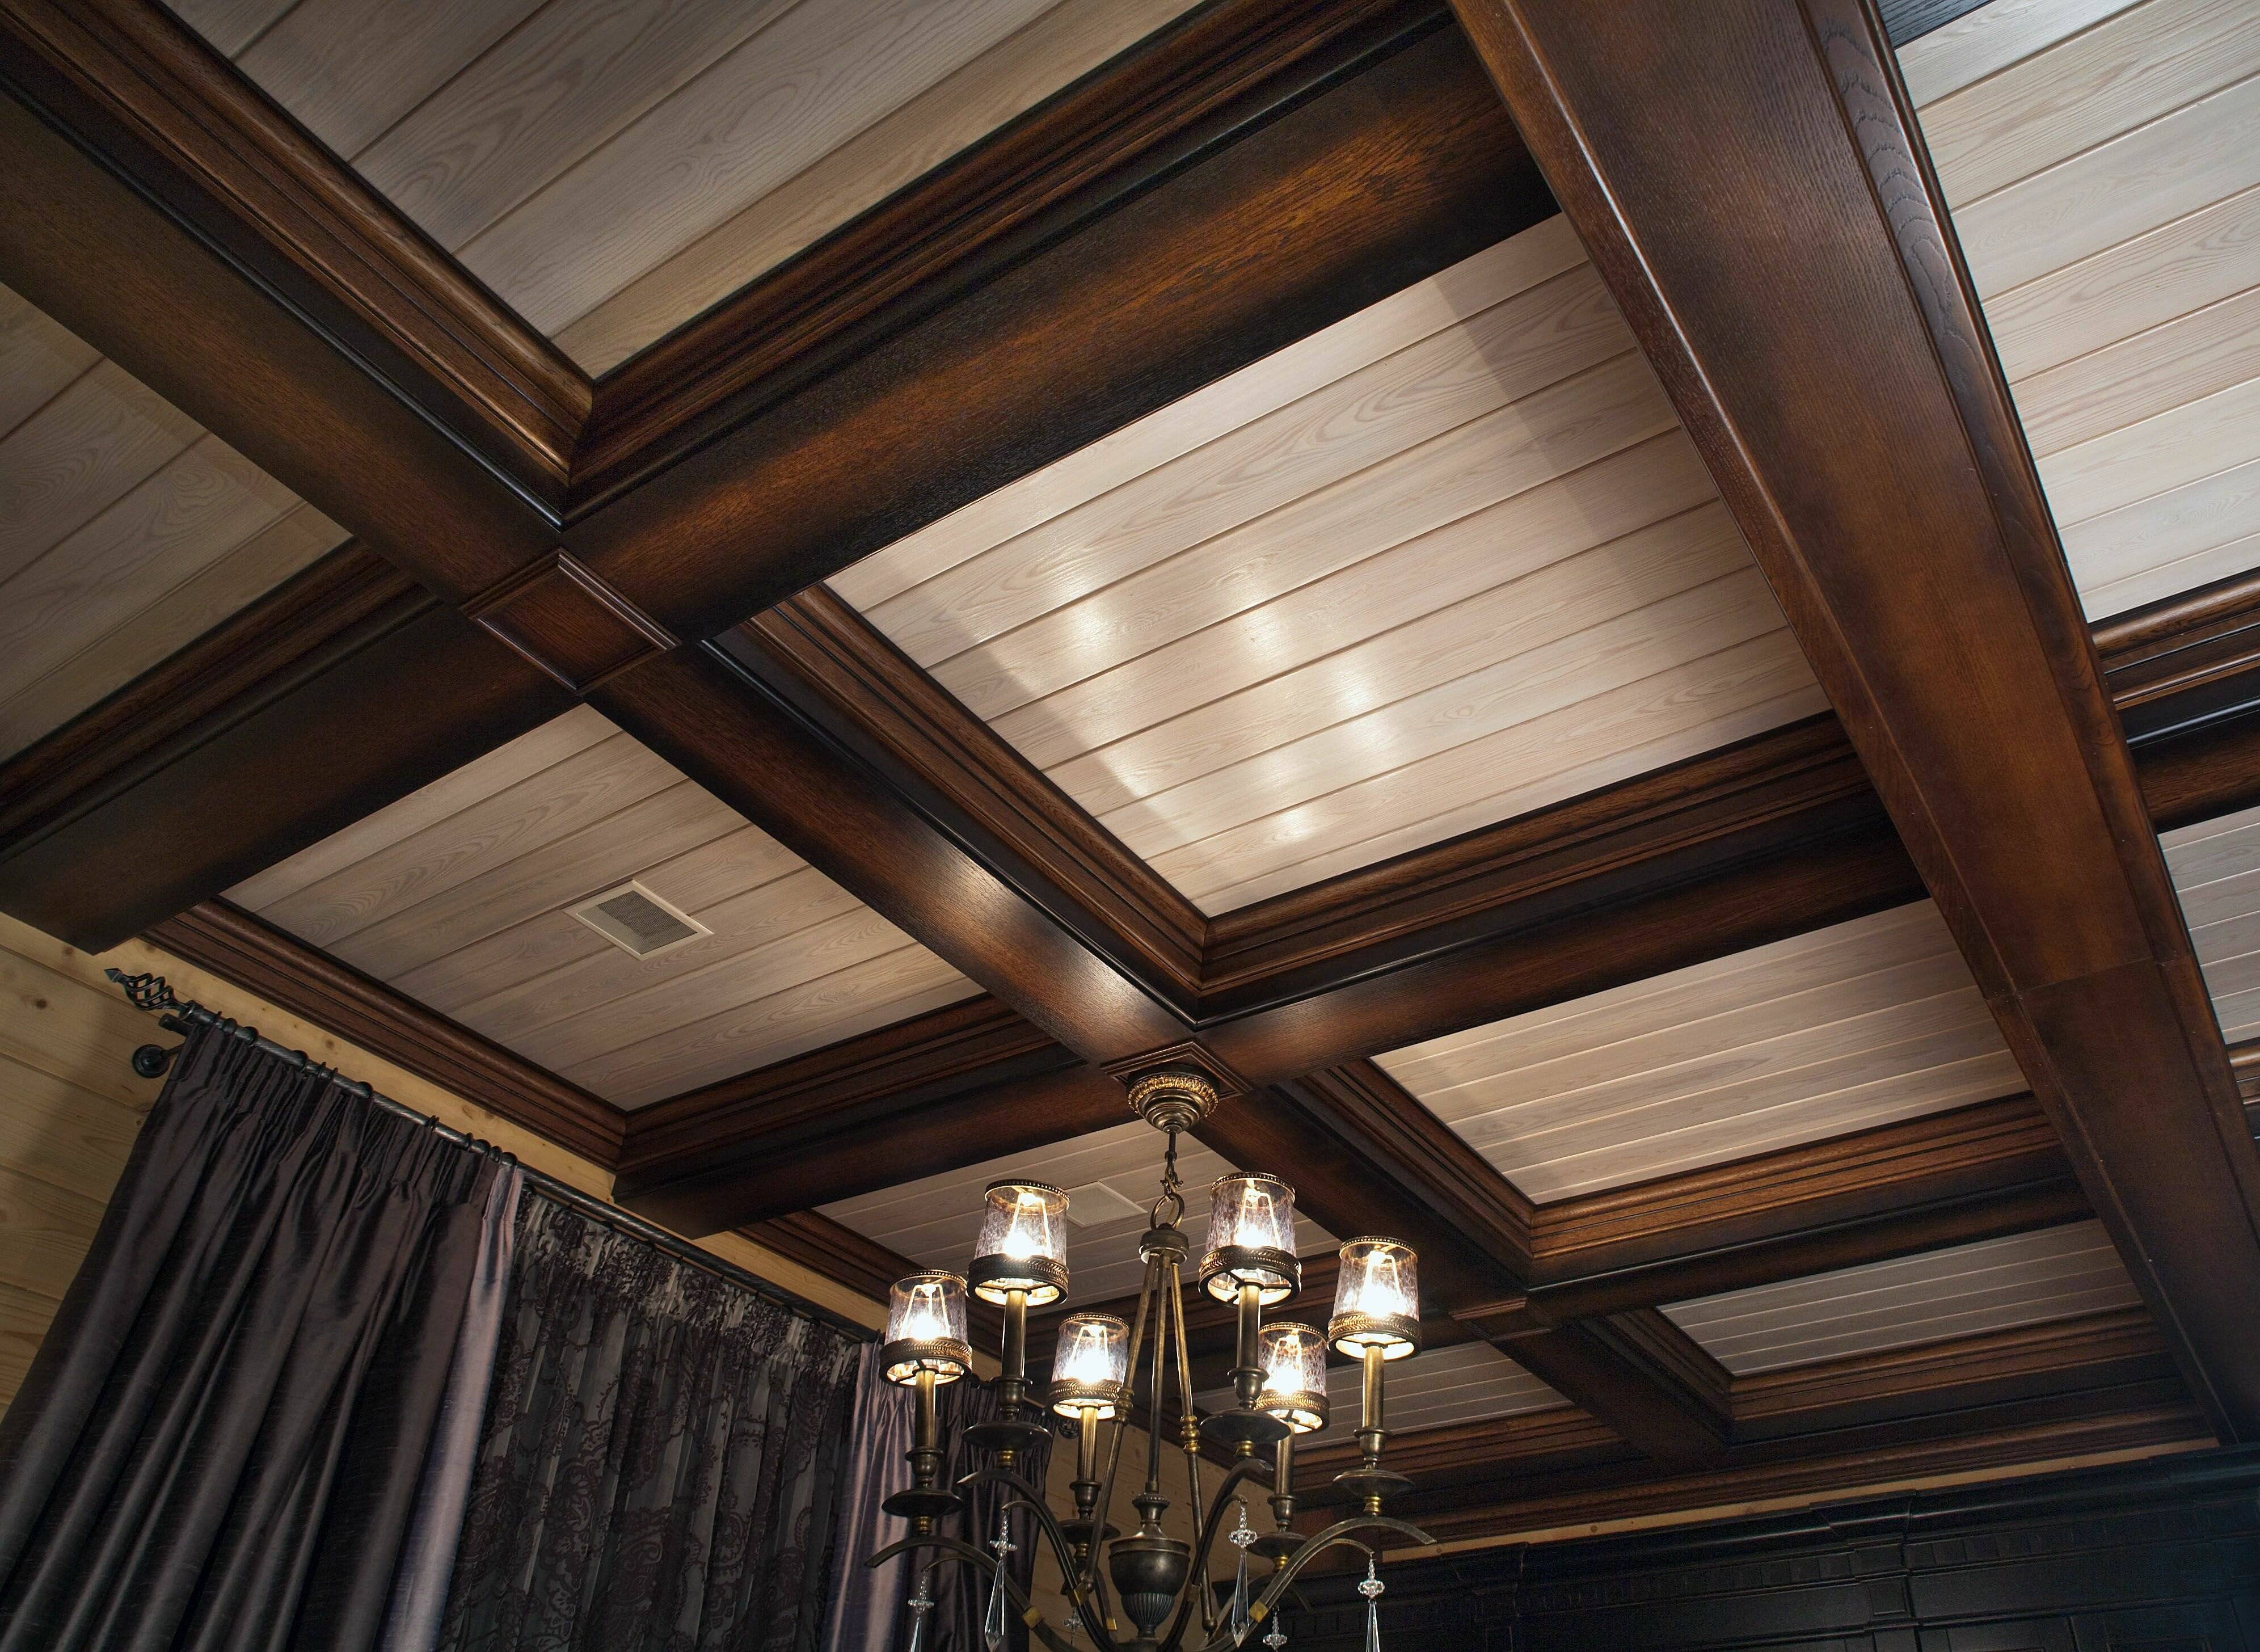 Кессонный потолок: деревянный в спальне на фото прямоугольный, гибкий плинтус и монтаж